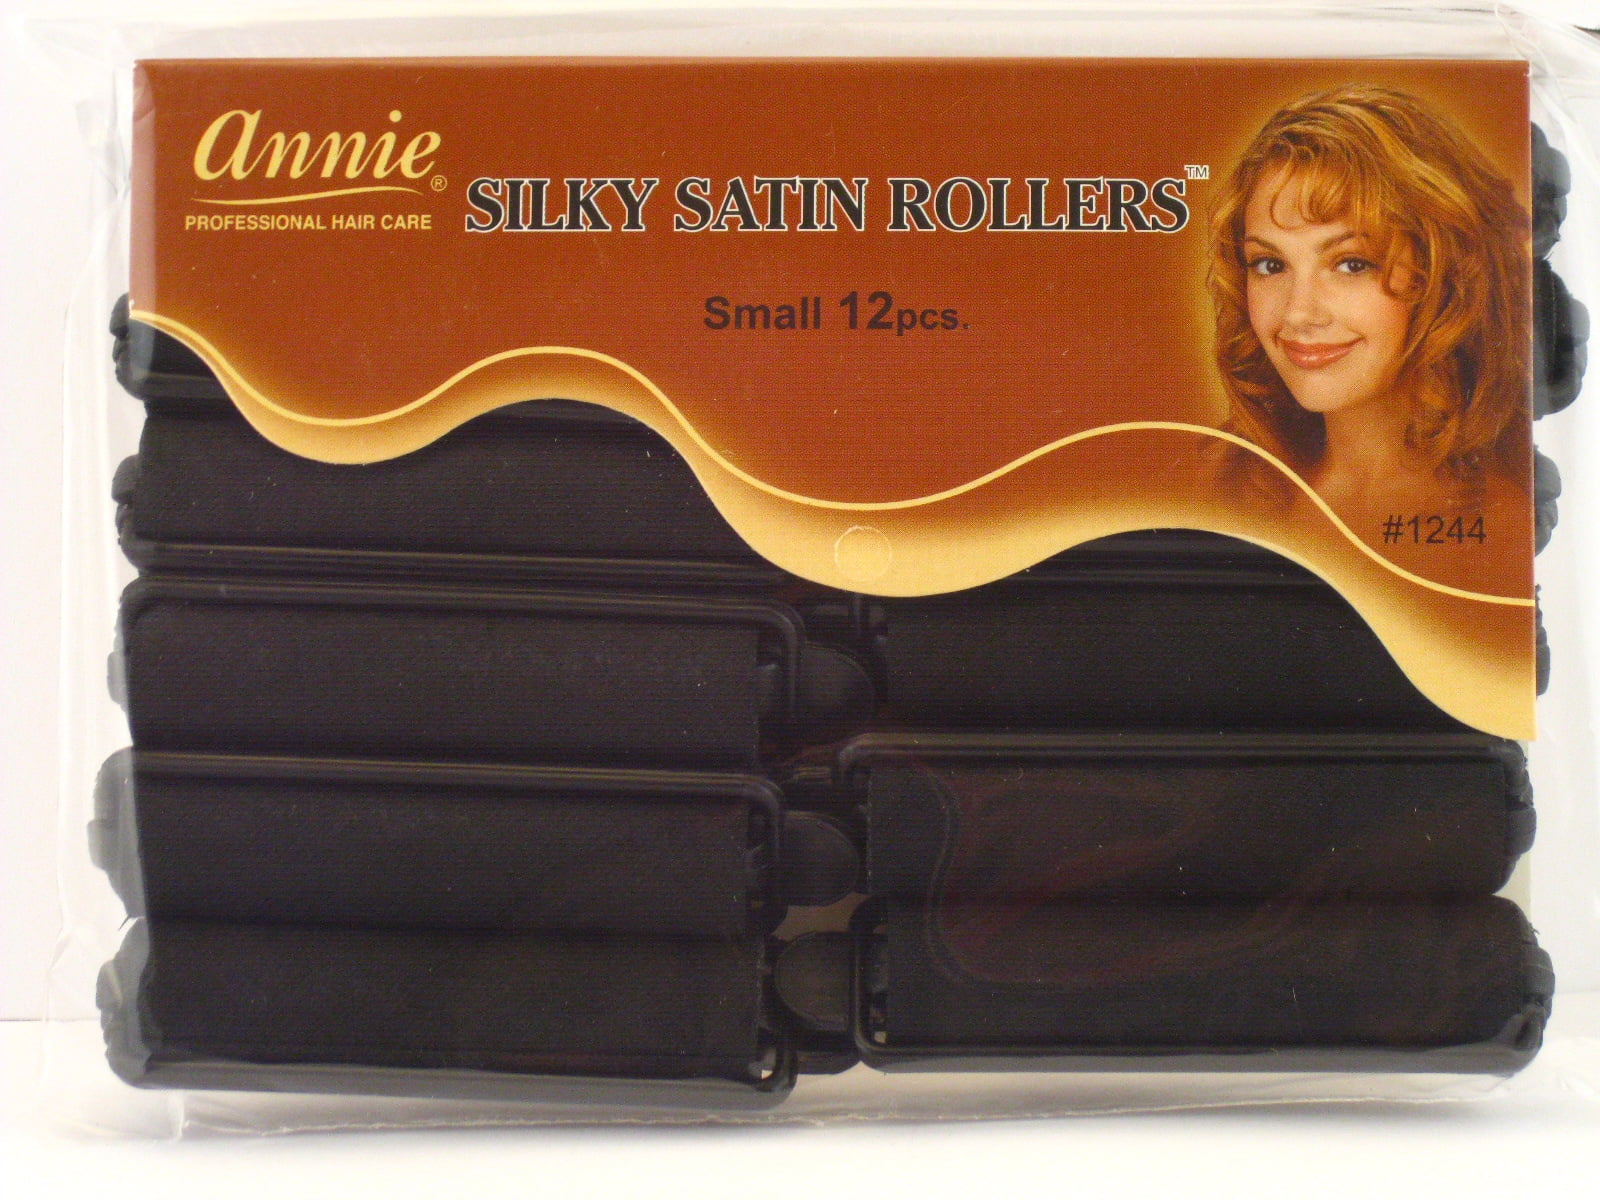 annie hair products